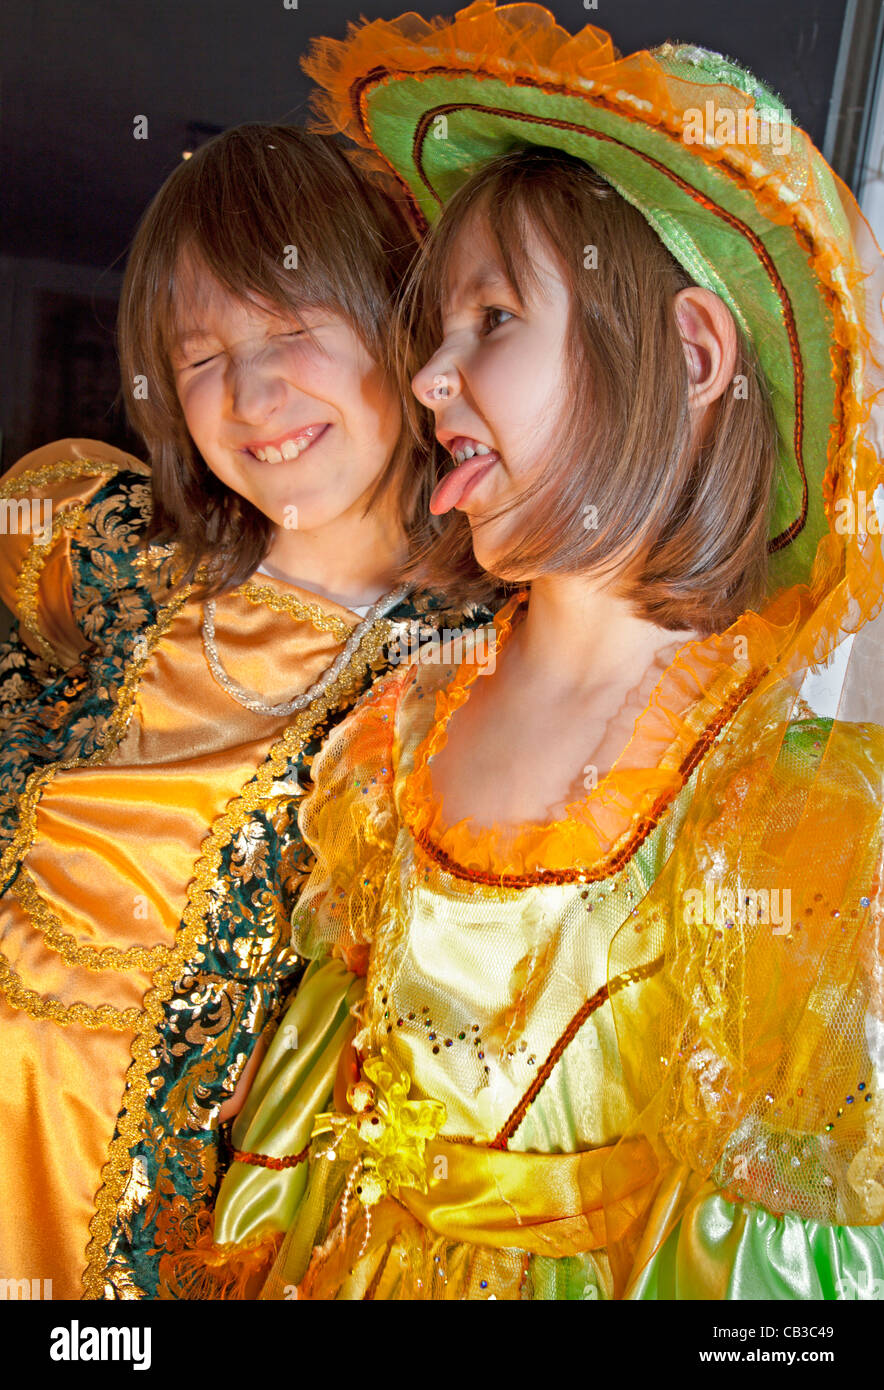 Schwestern von Spaß im Karneval Kleidung Stockfoto